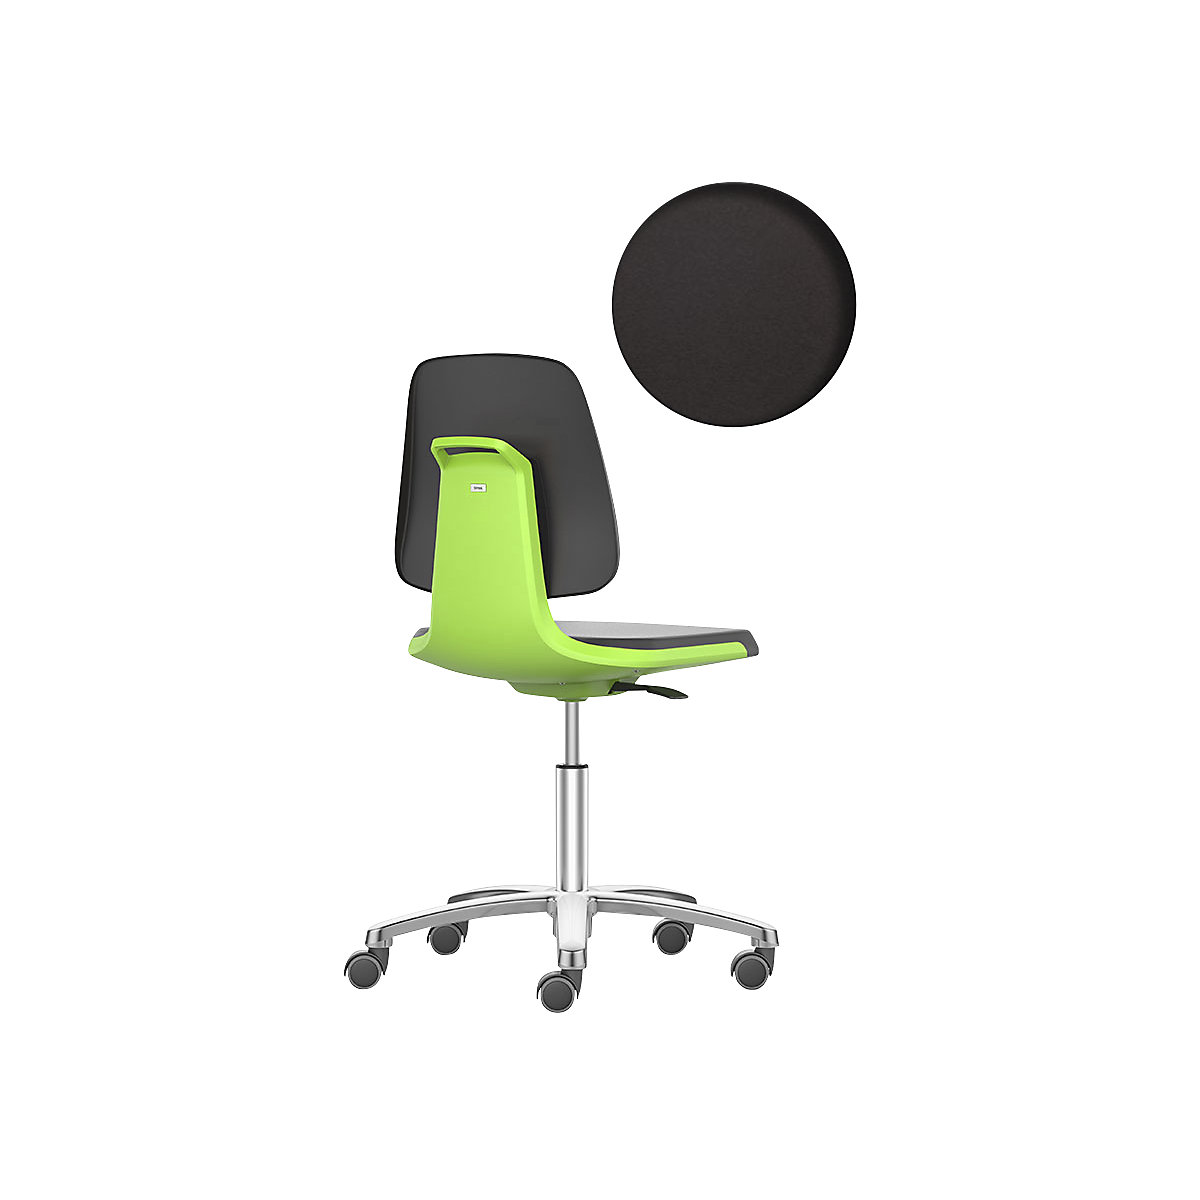 Silla giratoria de trabajo LABSIT – bimos, cinco pies con ruedas, asiento con tapizado de piel sintética verde-22